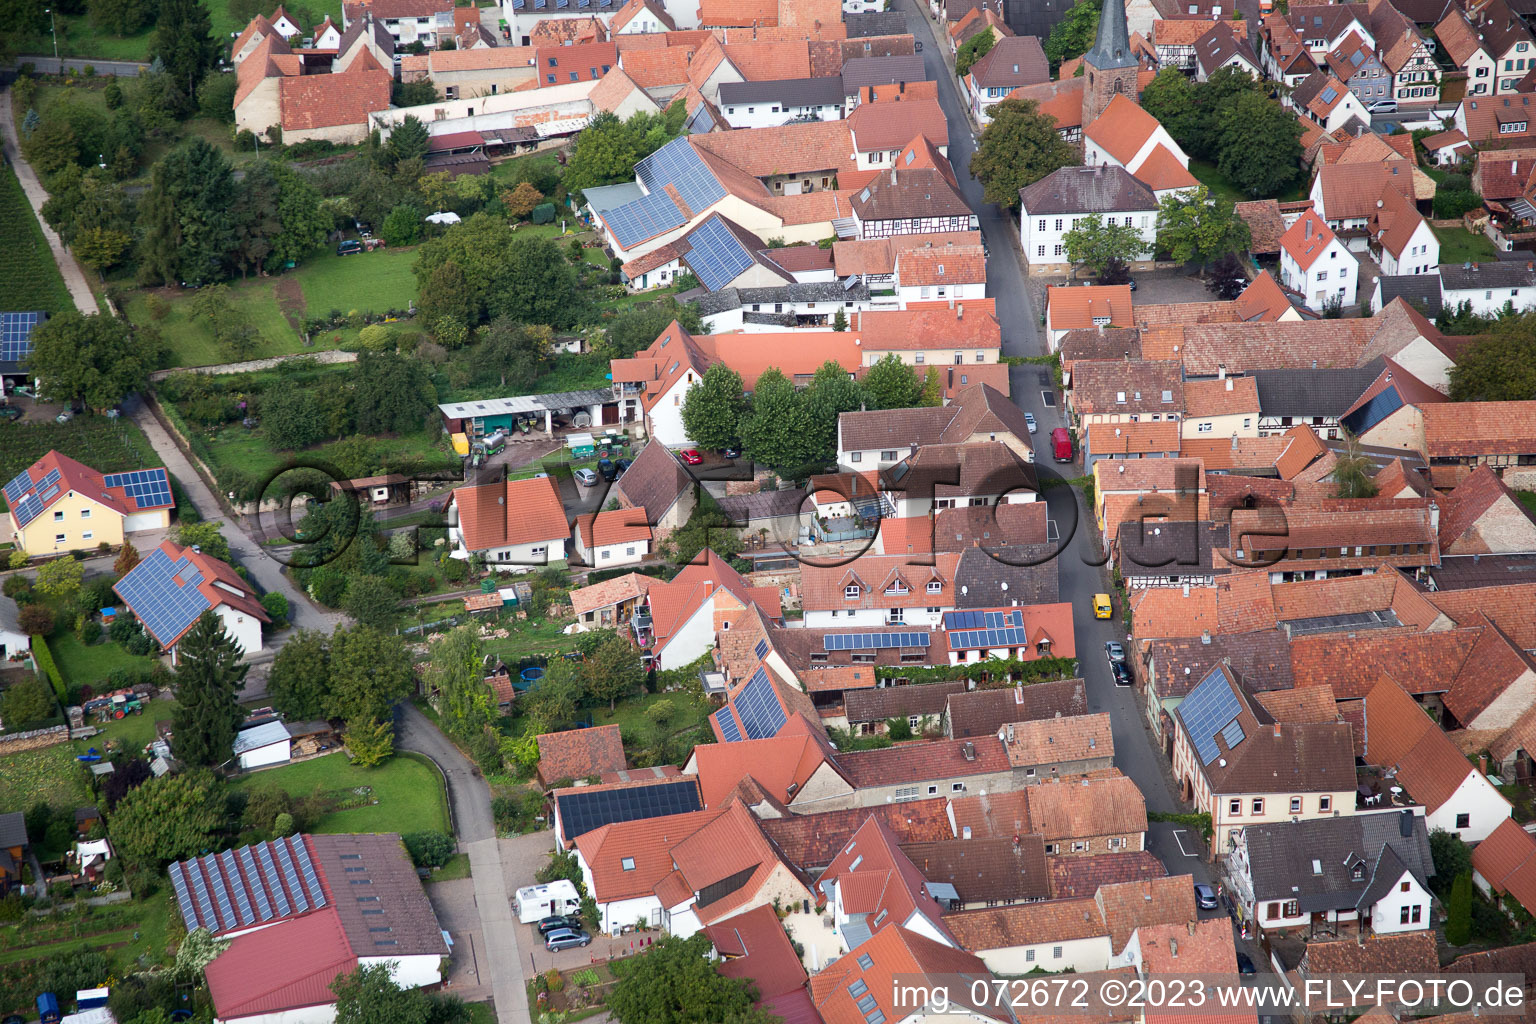 District Heuchelheim in Heuchelheim-Klingen in the state Rhineland-Palatinate, Germany from the drone perspective